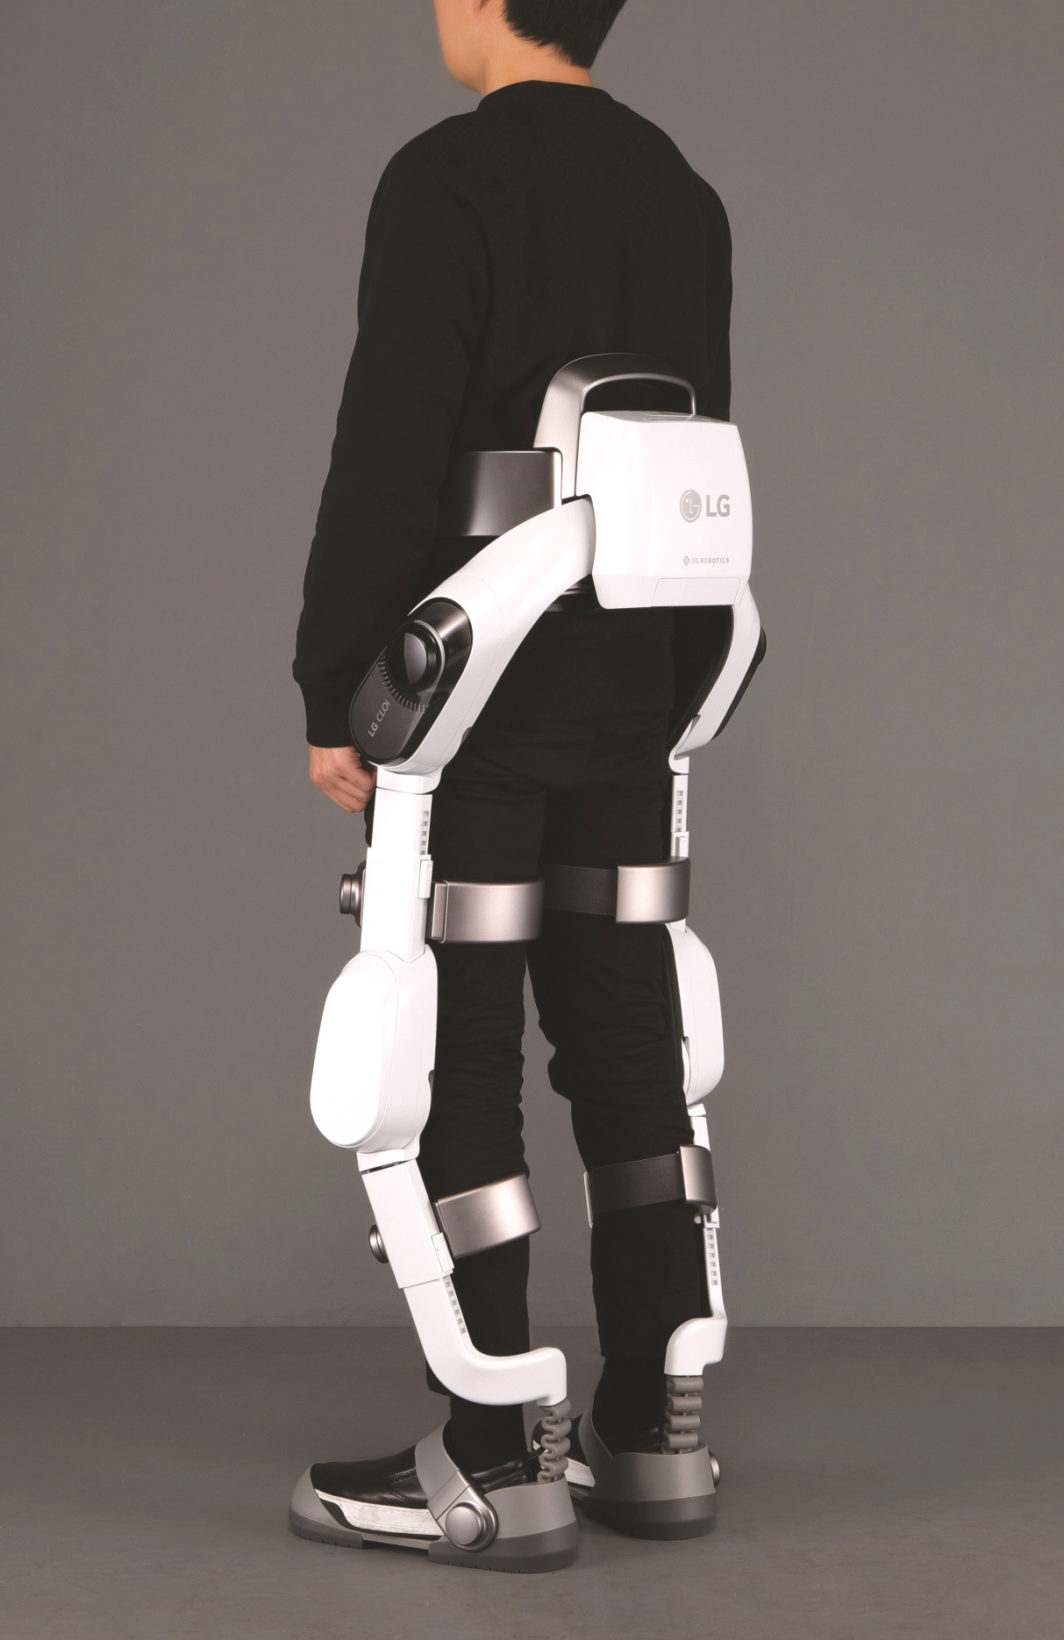 IFA 2018: LG presemta i nuovi Styler per la cura degli abiti e il primo Robot indossabile